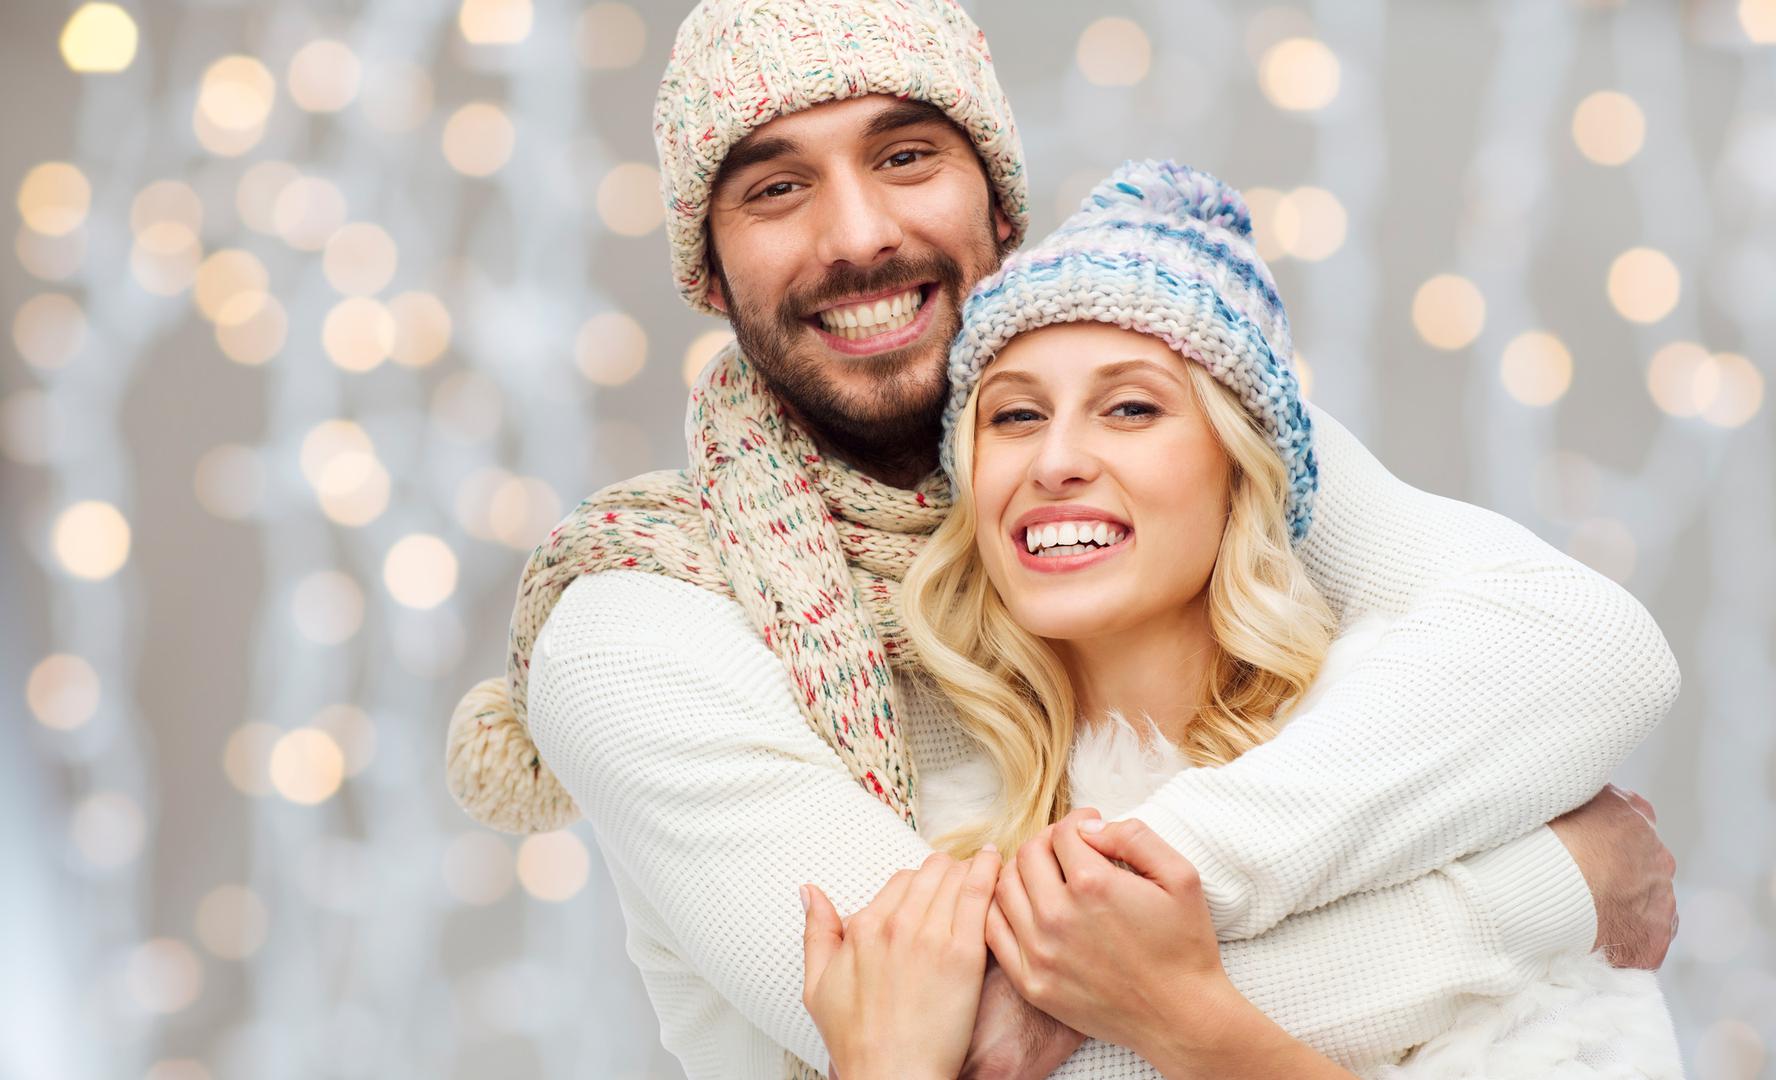 Ženama je posebno seksi kada krene hladnije vrijeme, a muškarci počnu na sebe odijevati pletene veste. Ima nešto seksi u tim muškarcima koji nose veste, što žene s lakoćom uzbudi